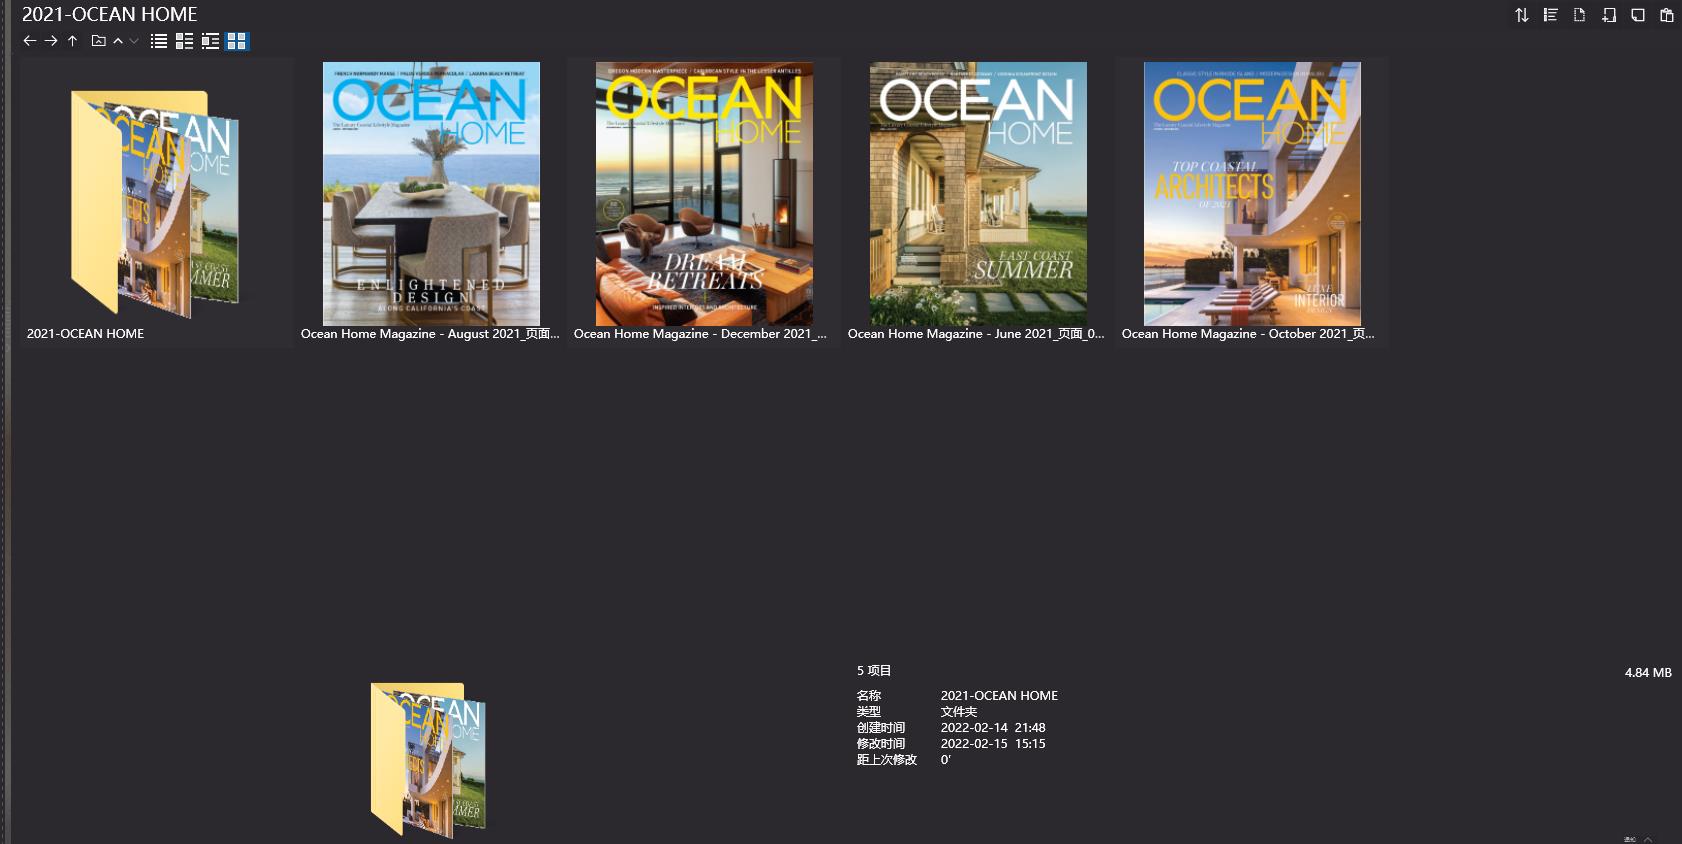 别墅设计杂志Ocean Home Magazine,Ocean Home Magazine,别墅设计杂志,软装设计杂志,Ocean Home Magazine设计电子杂志,杂志下载,Ocean Home Magazine杂志合集